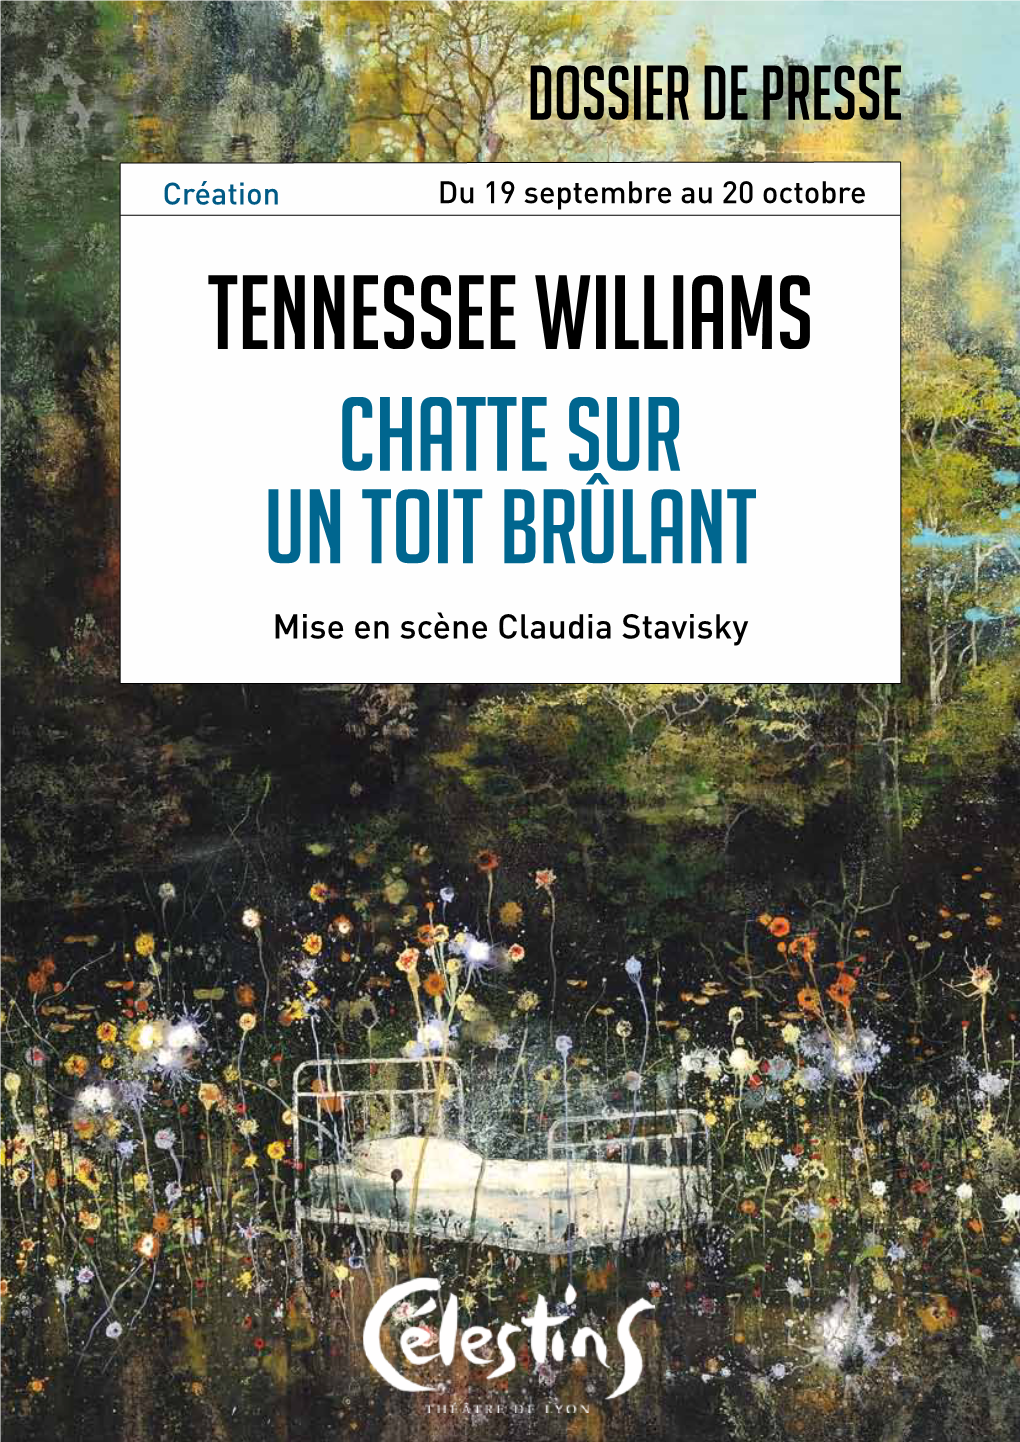 Tennessee Williams Chatte Sur Un Toit Brûlant Mise En Scène Claudia Stavisky Chatte Sur Un Toit Brûlant Est Soutenue Par